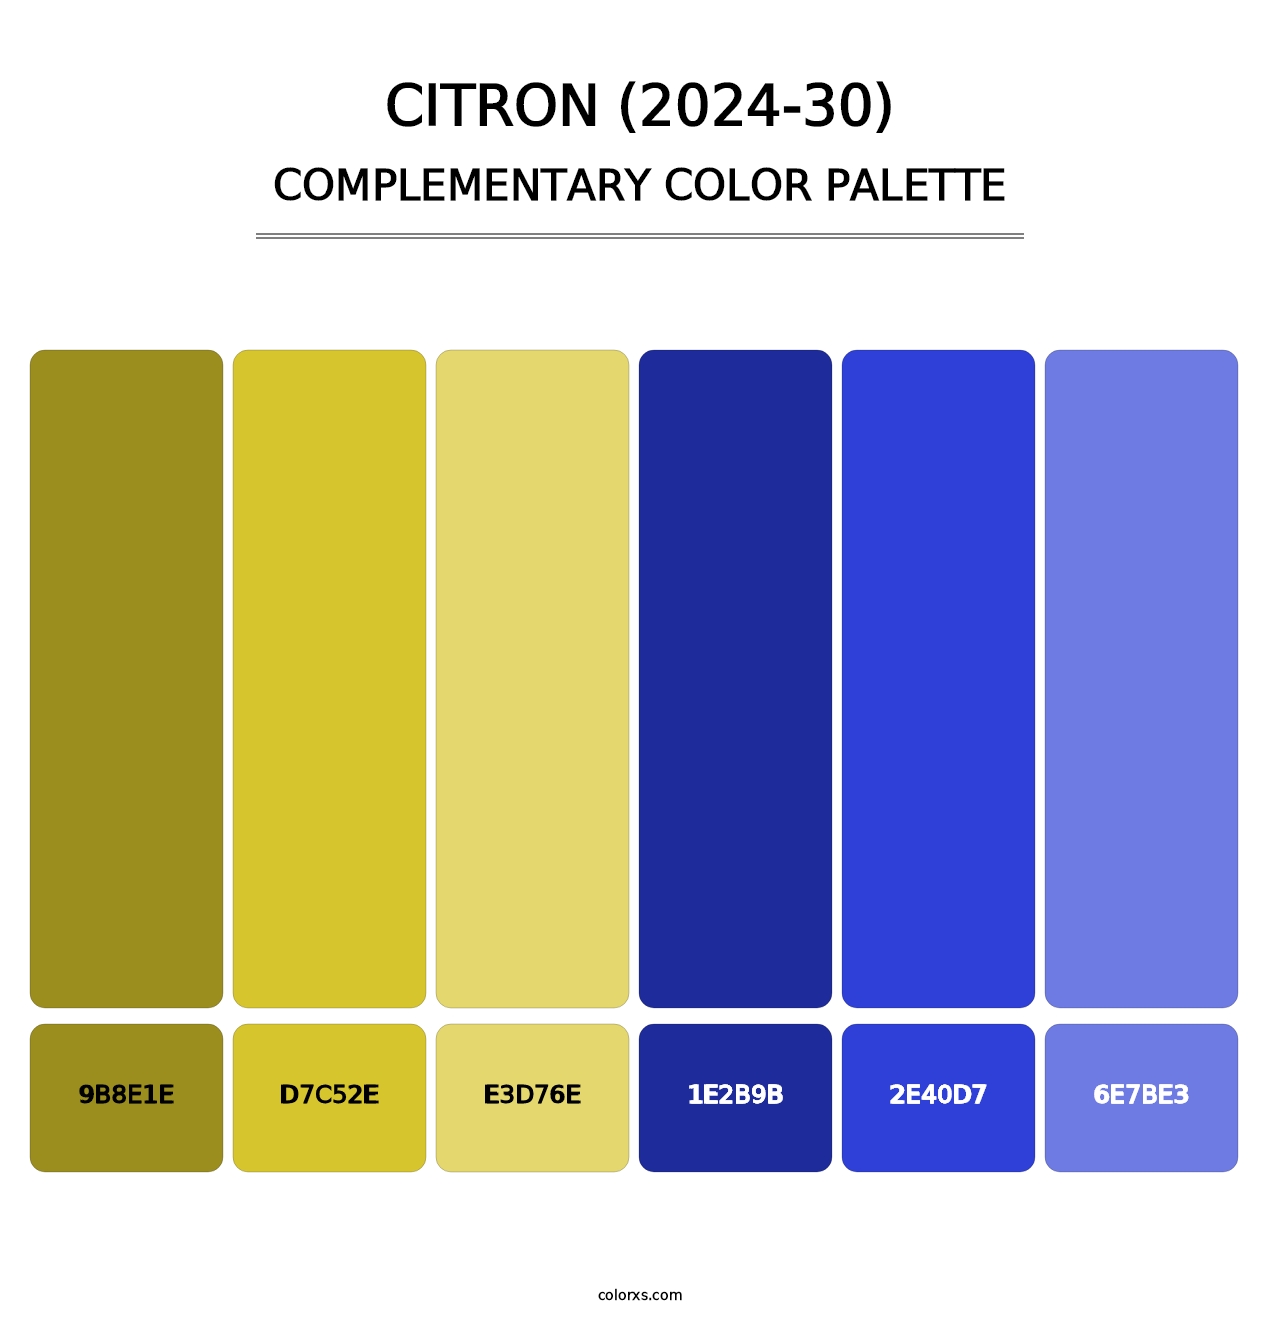 Citron (2024-30) - Complementary Color Palette